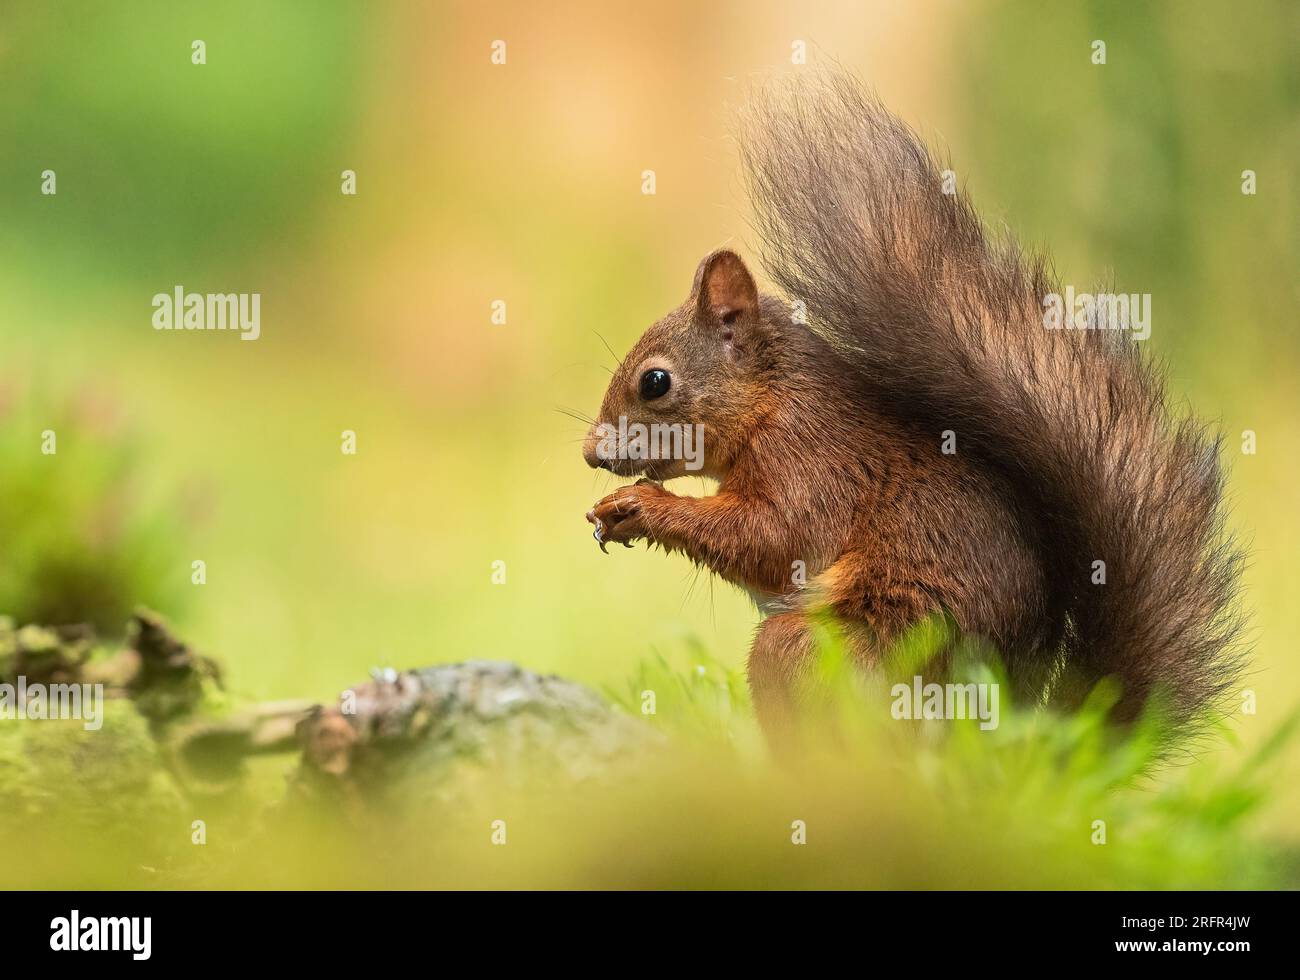 Nahaufnahme eines seltenen roten Eichhörnchens ( Sciurus vulgaris) auf klarem grünen Hintergrund. Es frisst eine Nuss auf einer mossigen Bank. Yorkshire, Großbritannien. Stockfoto